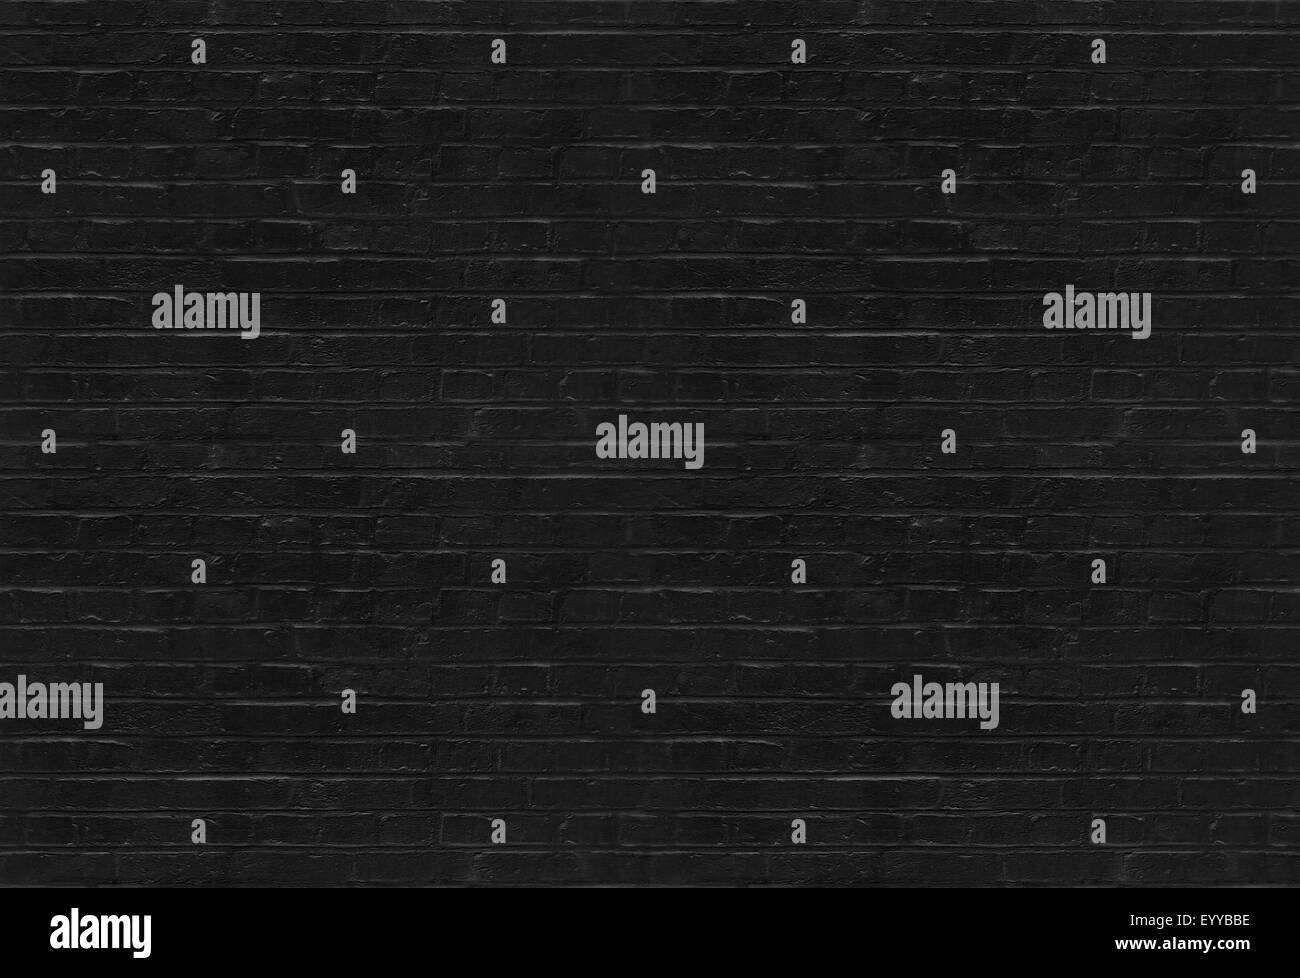 Seamless black brick wall pattern Stock Photo